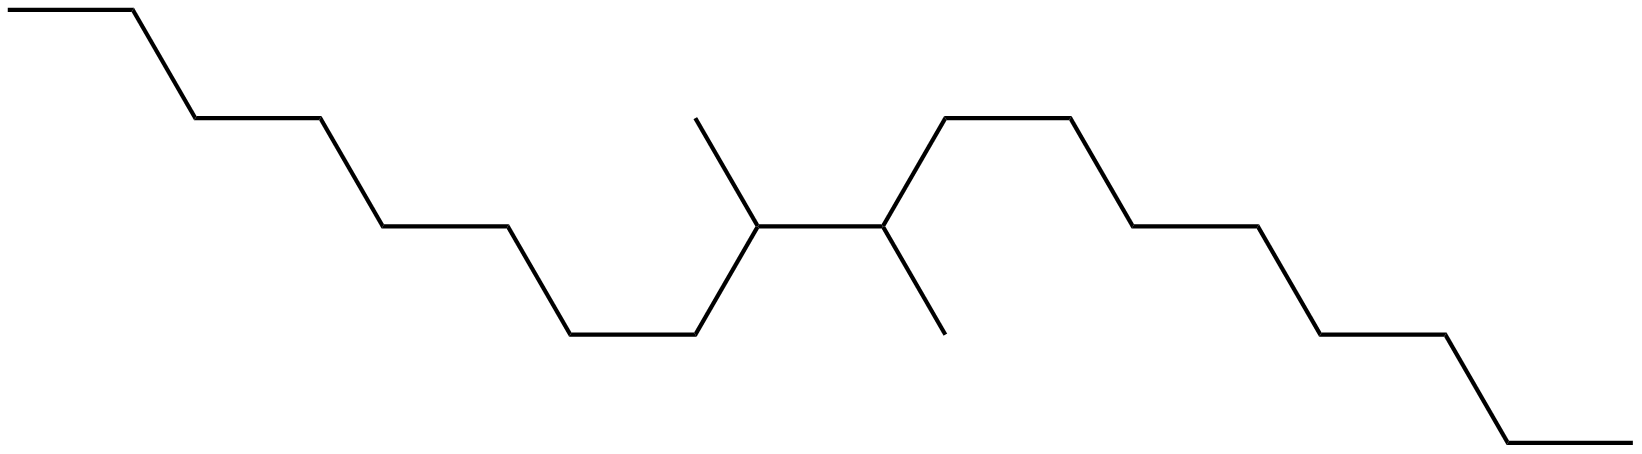 Image of 9,10-dimethyloctadecane